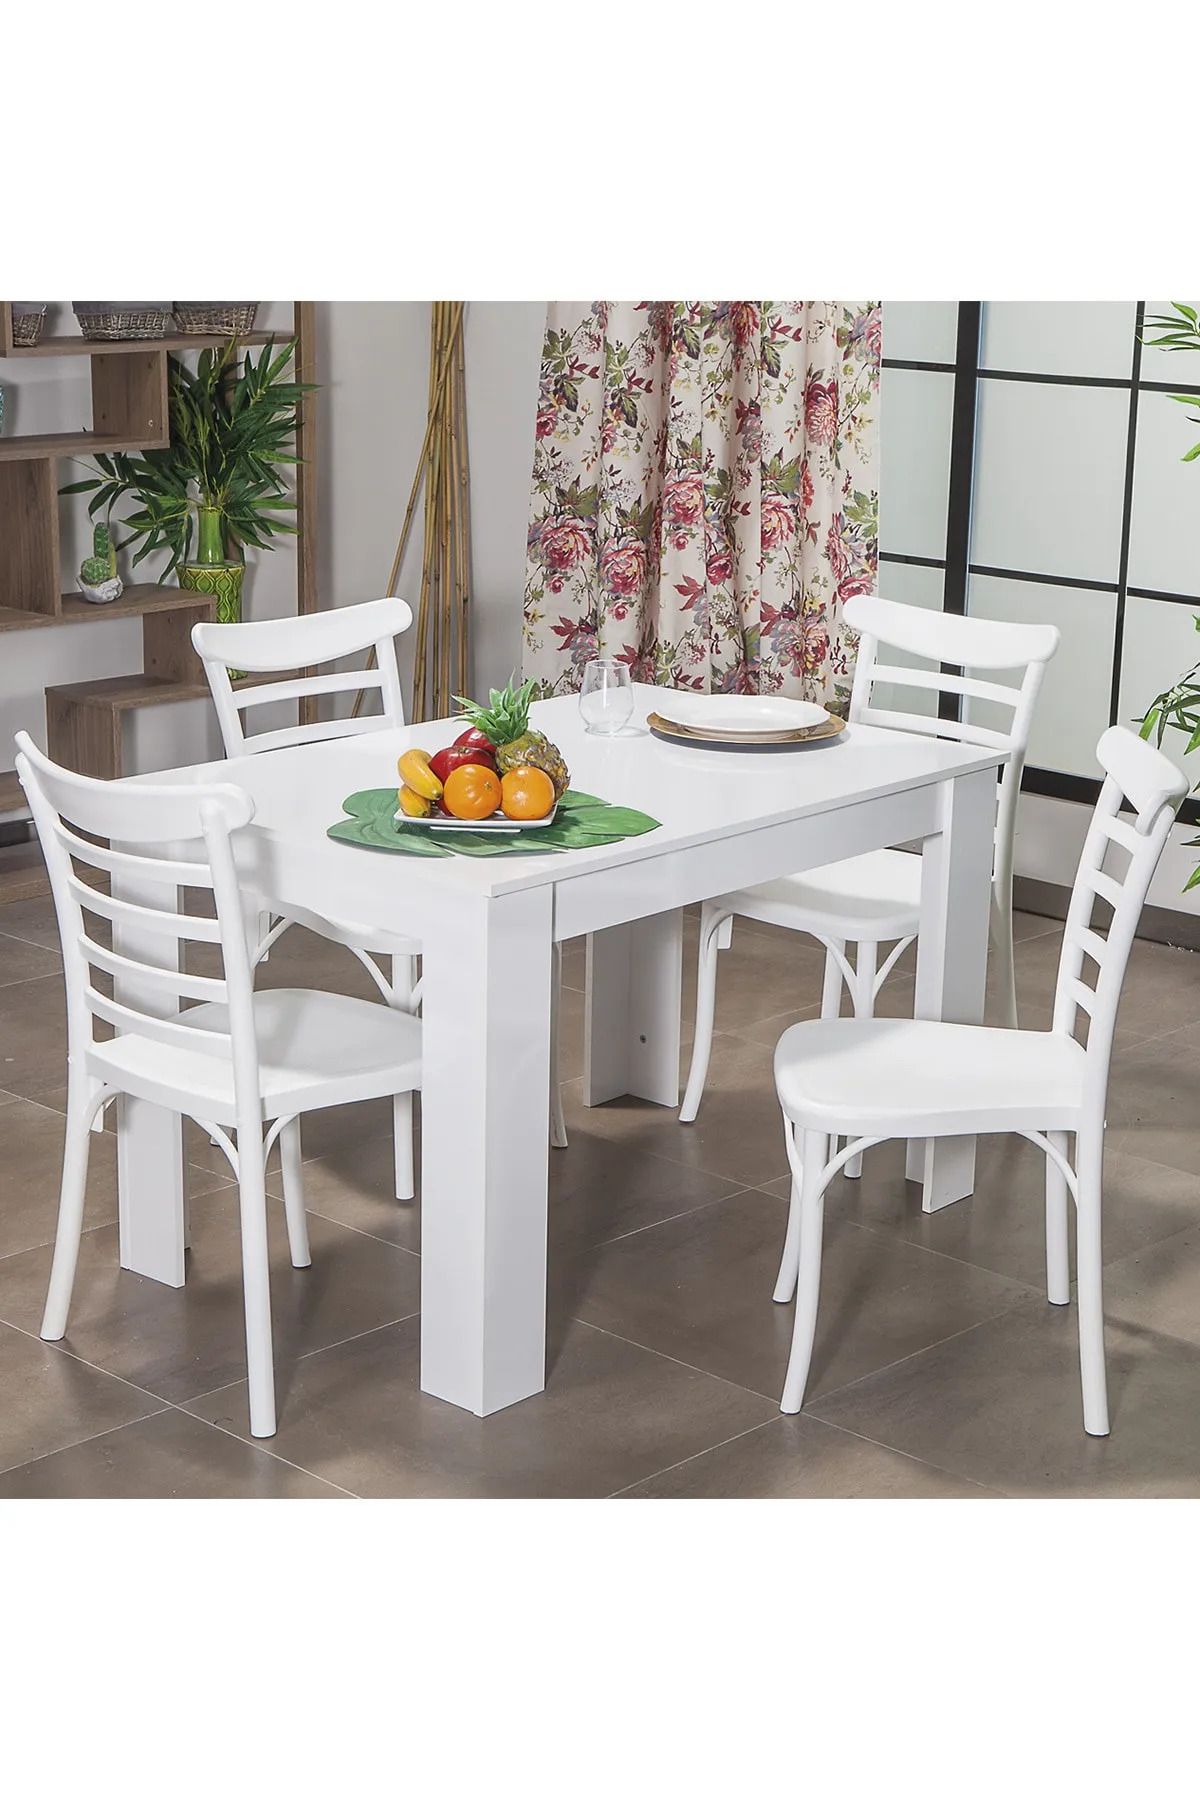 MOBETTO Arda / Efes Mutfak Masa Takımı 4 Sandalye 1 Masa - Beyaz